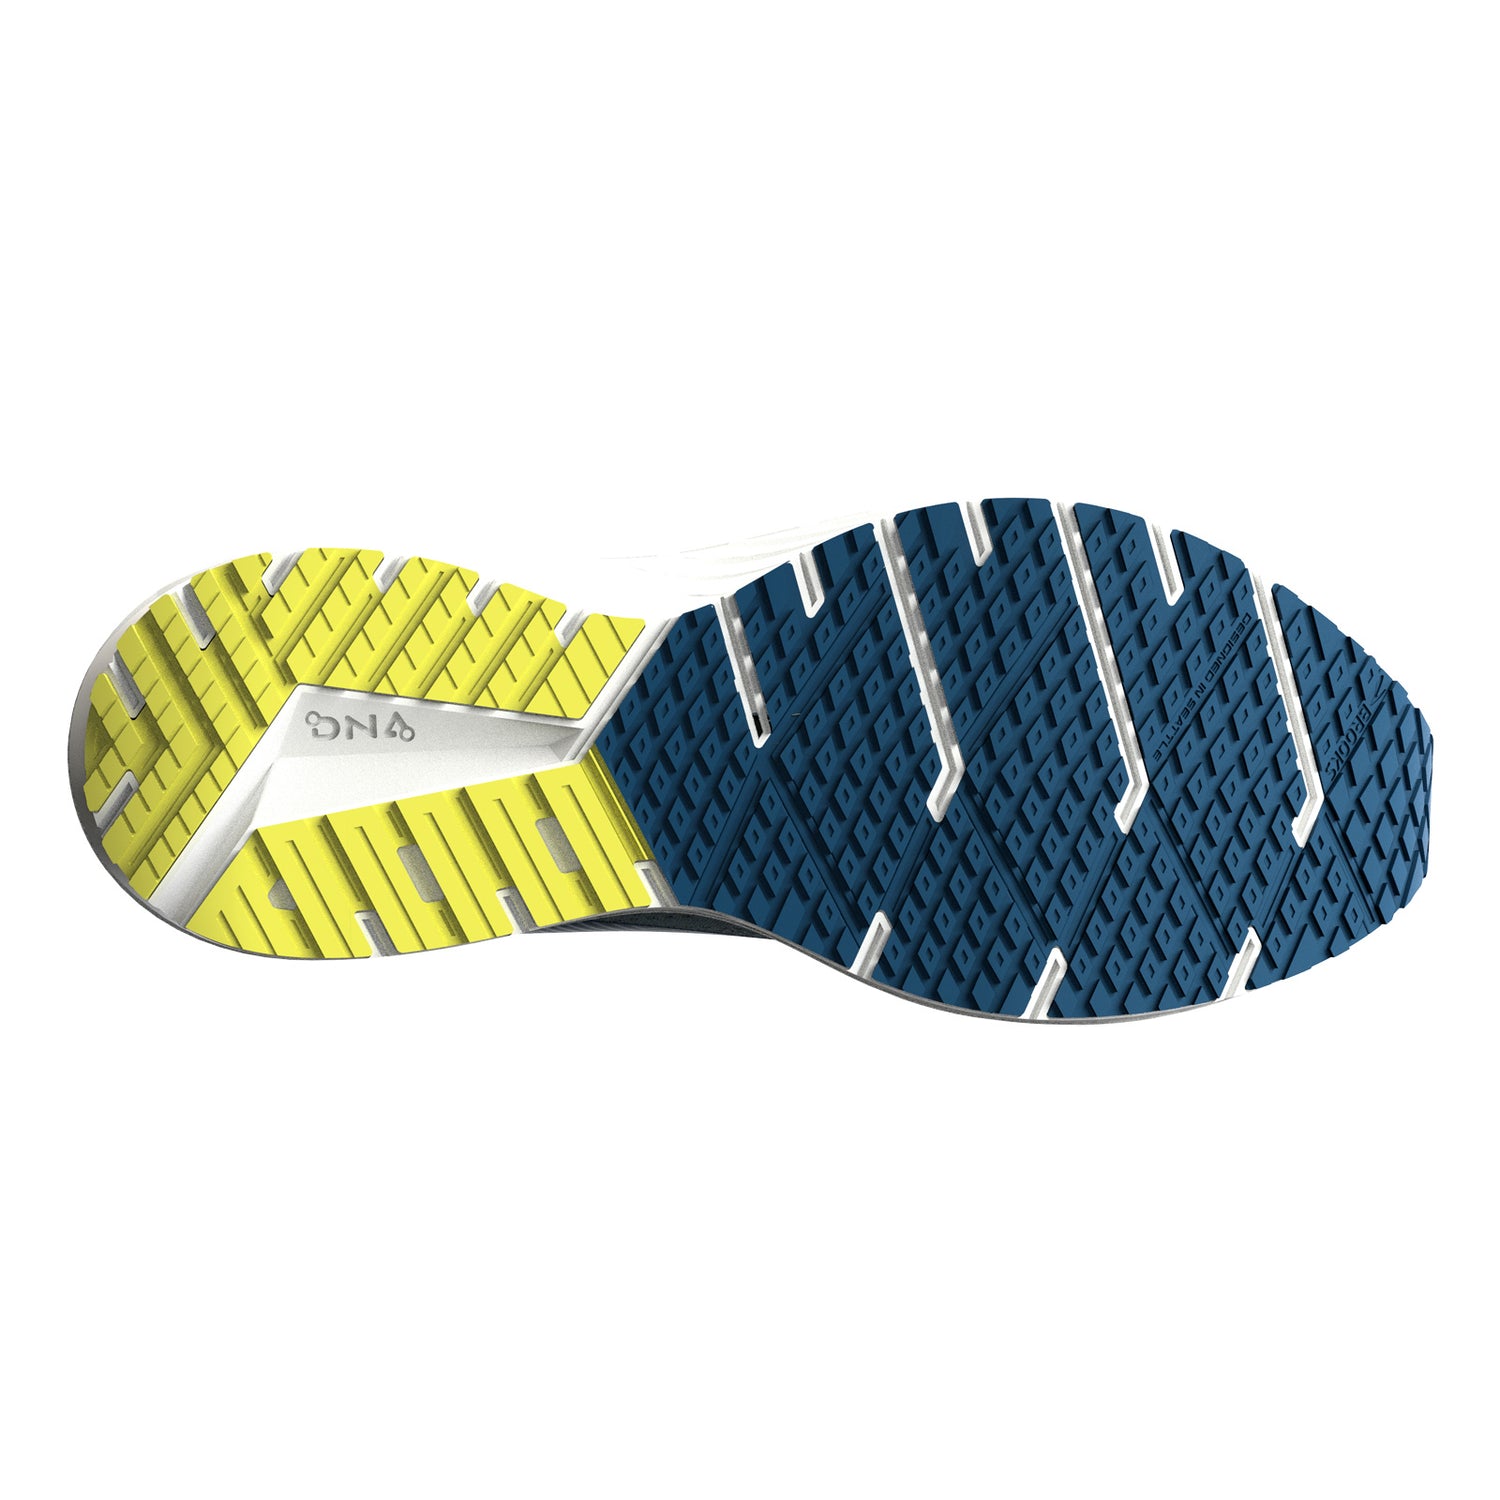 Peltz Shoes  Men's Brooks Revel 6 Running Shoe Light Blue/Nightlife 110398 1D 437